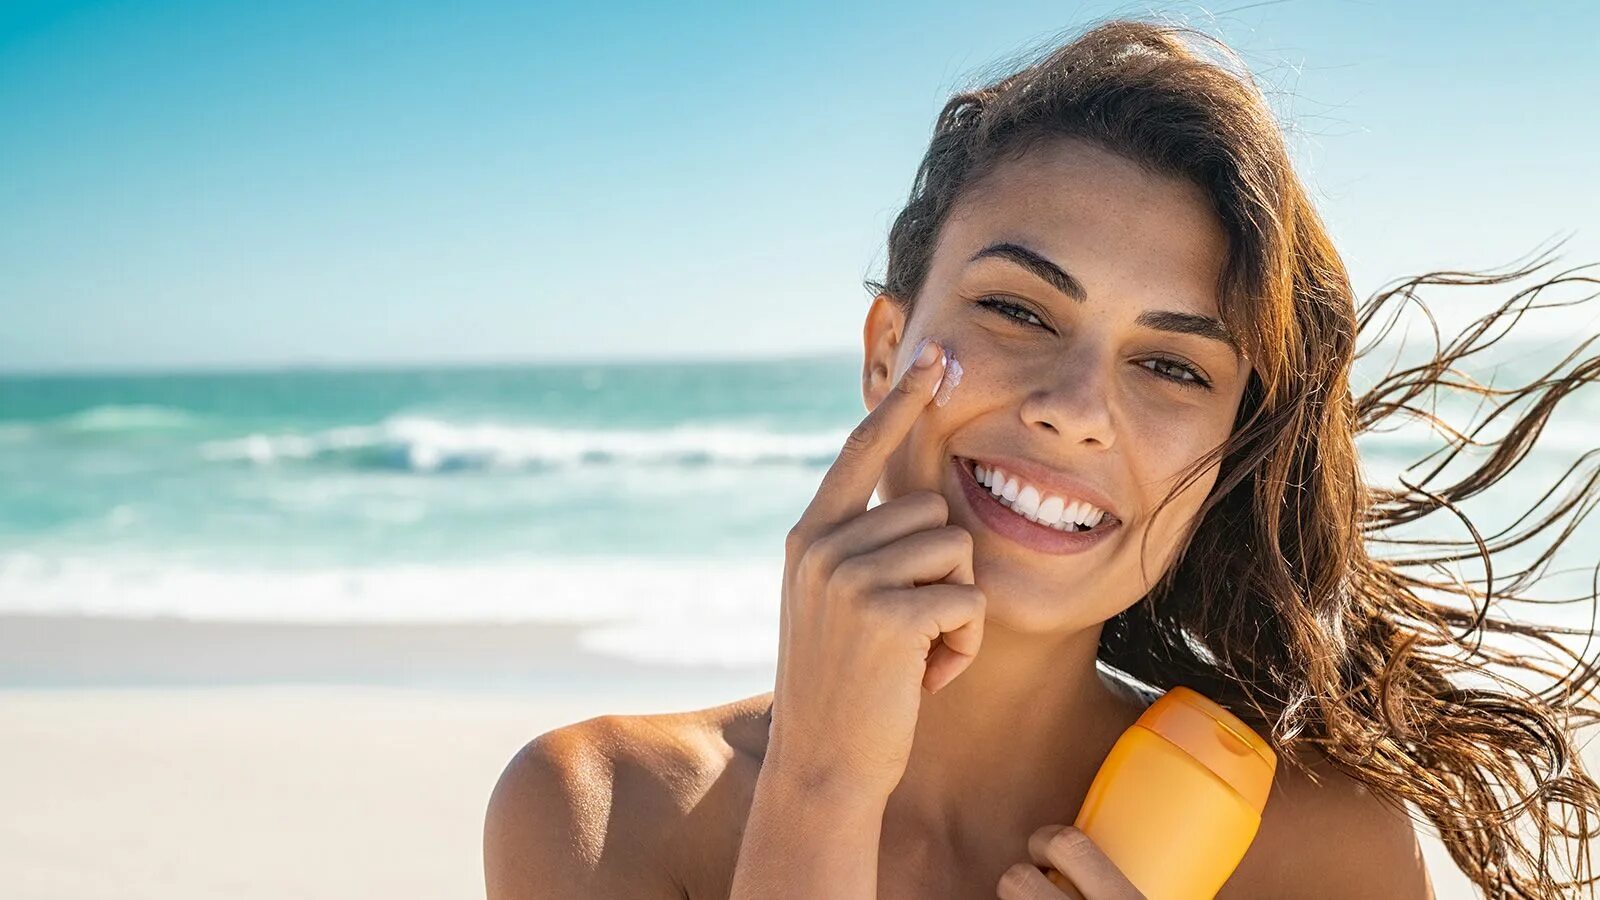 Солнцезащитный крем Sunscreen. Девушка с солнцезащитным кремом. Солнцезащитные крема нанесение. Загорелое лицо. Крем спф летом